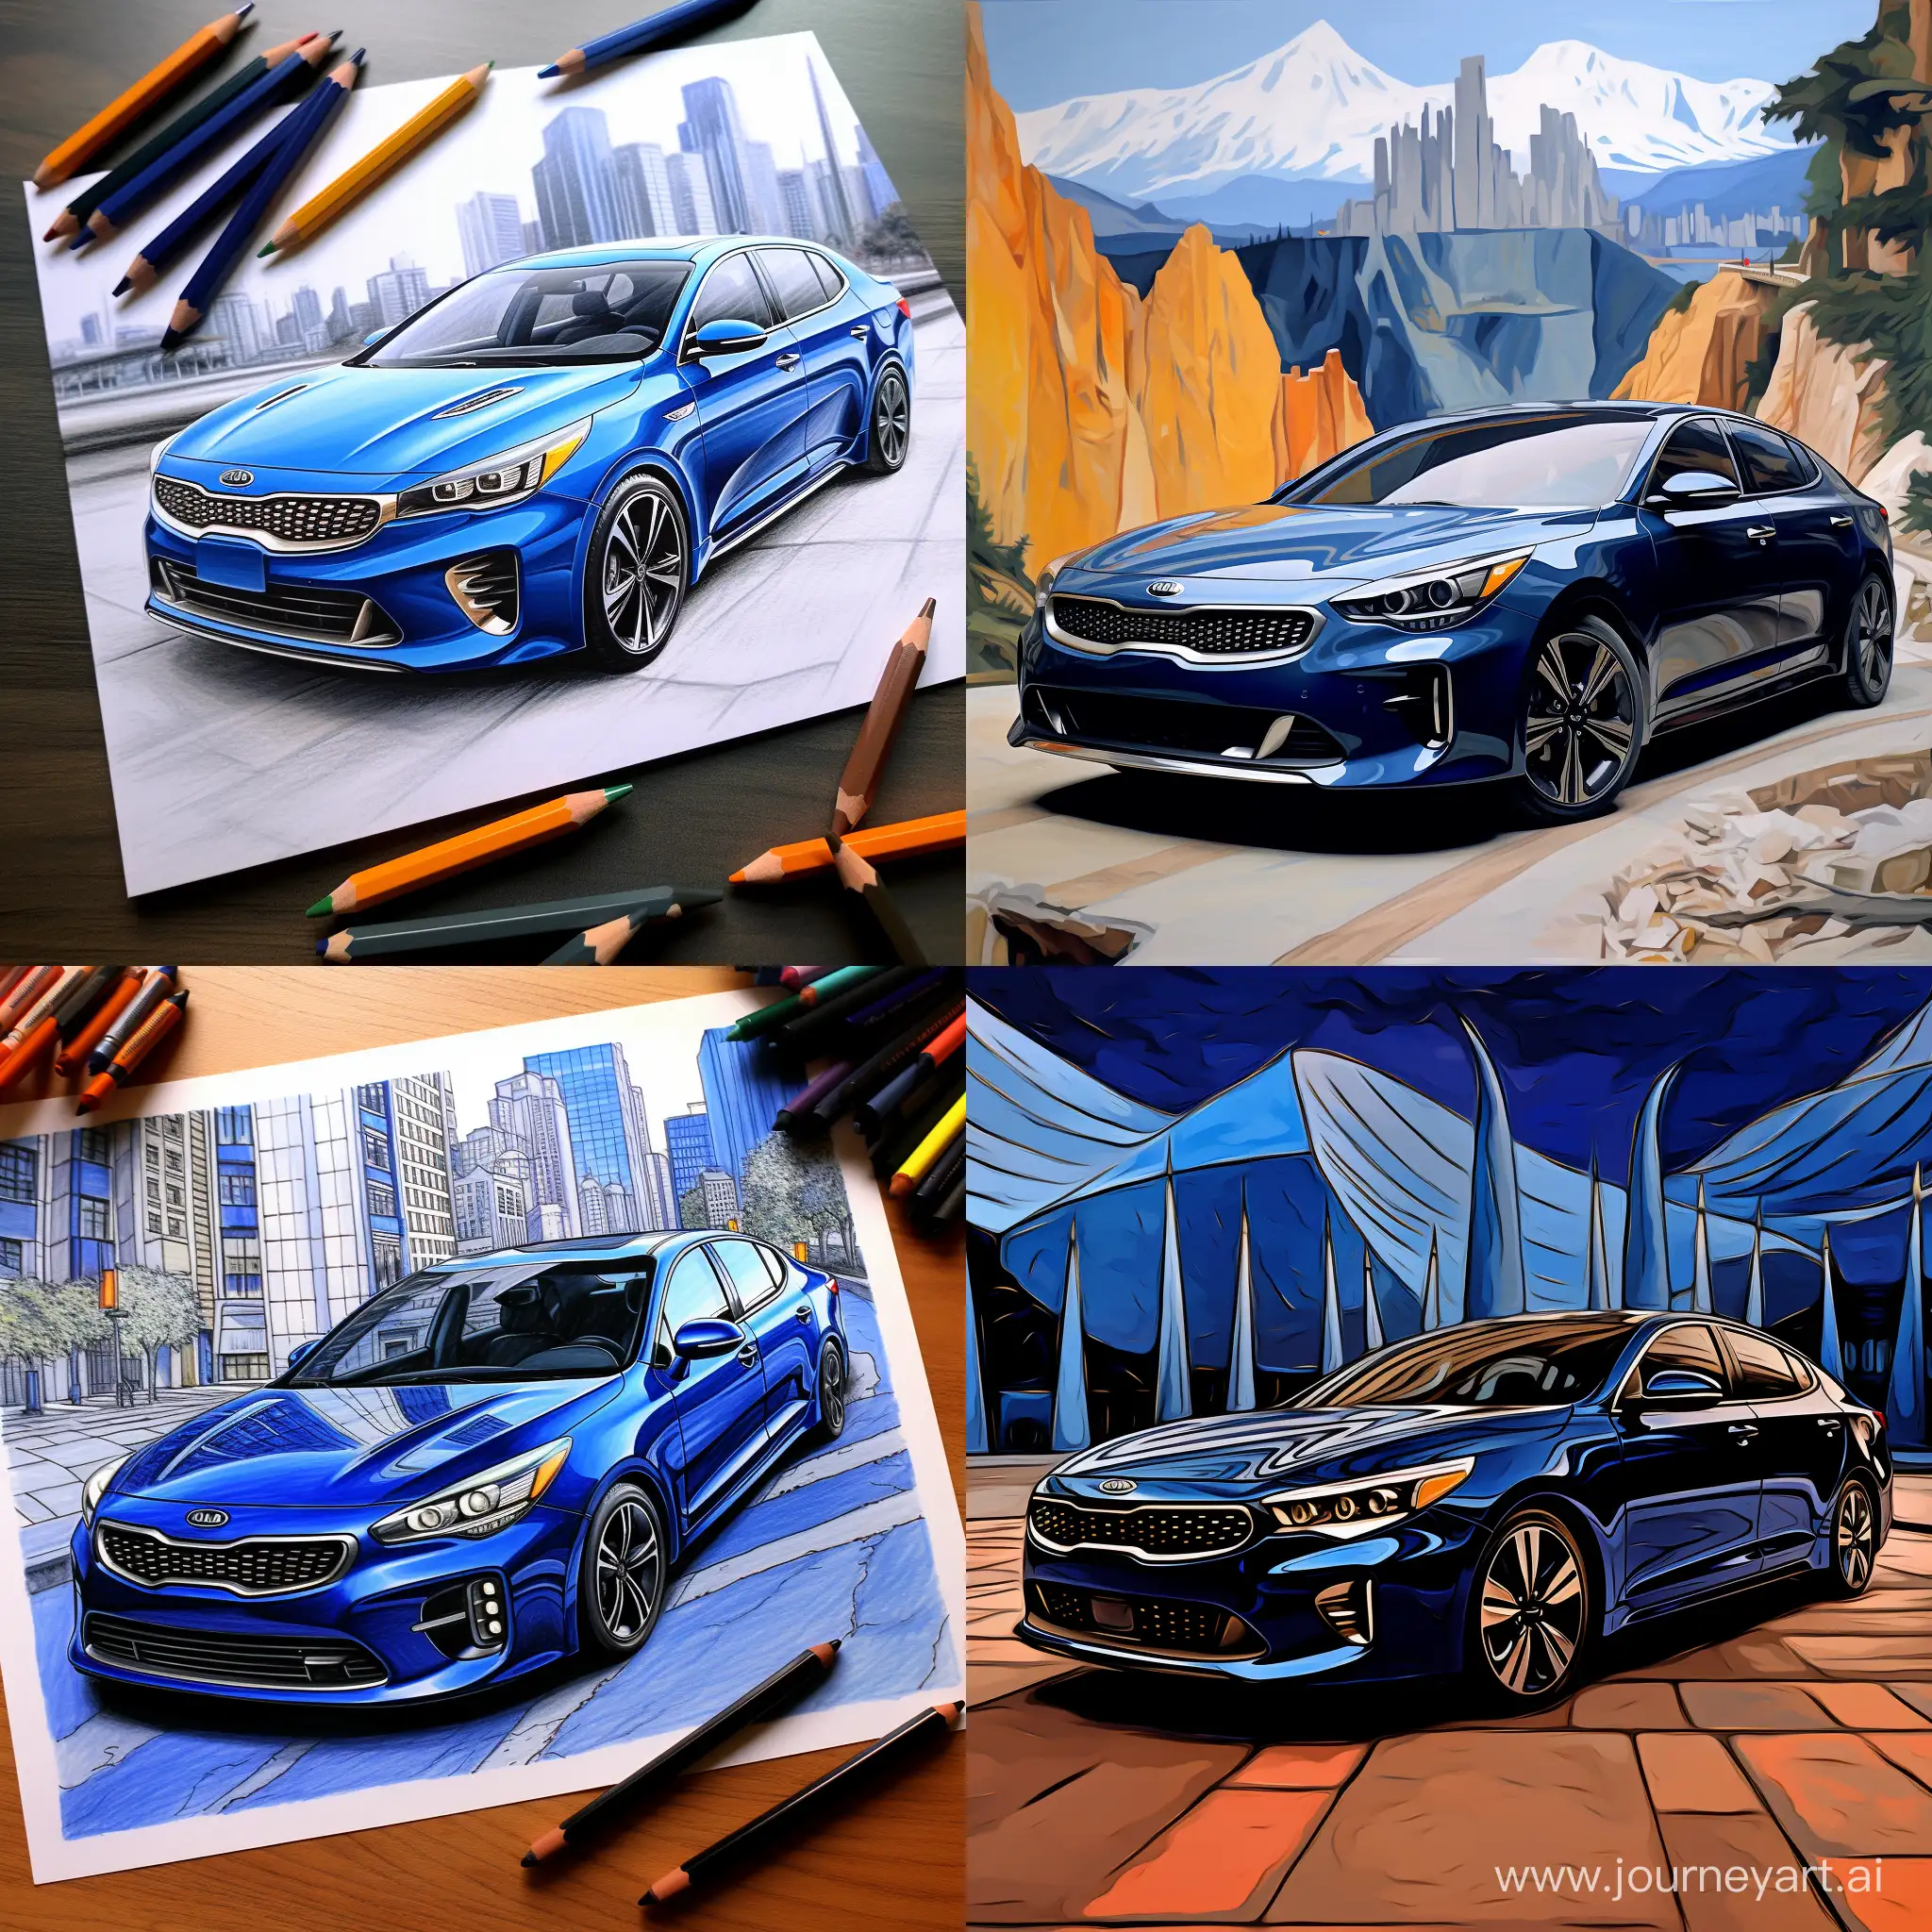 Futuristic-Blue-Kia-K5-in-2143-SciFi-Car-Illustration